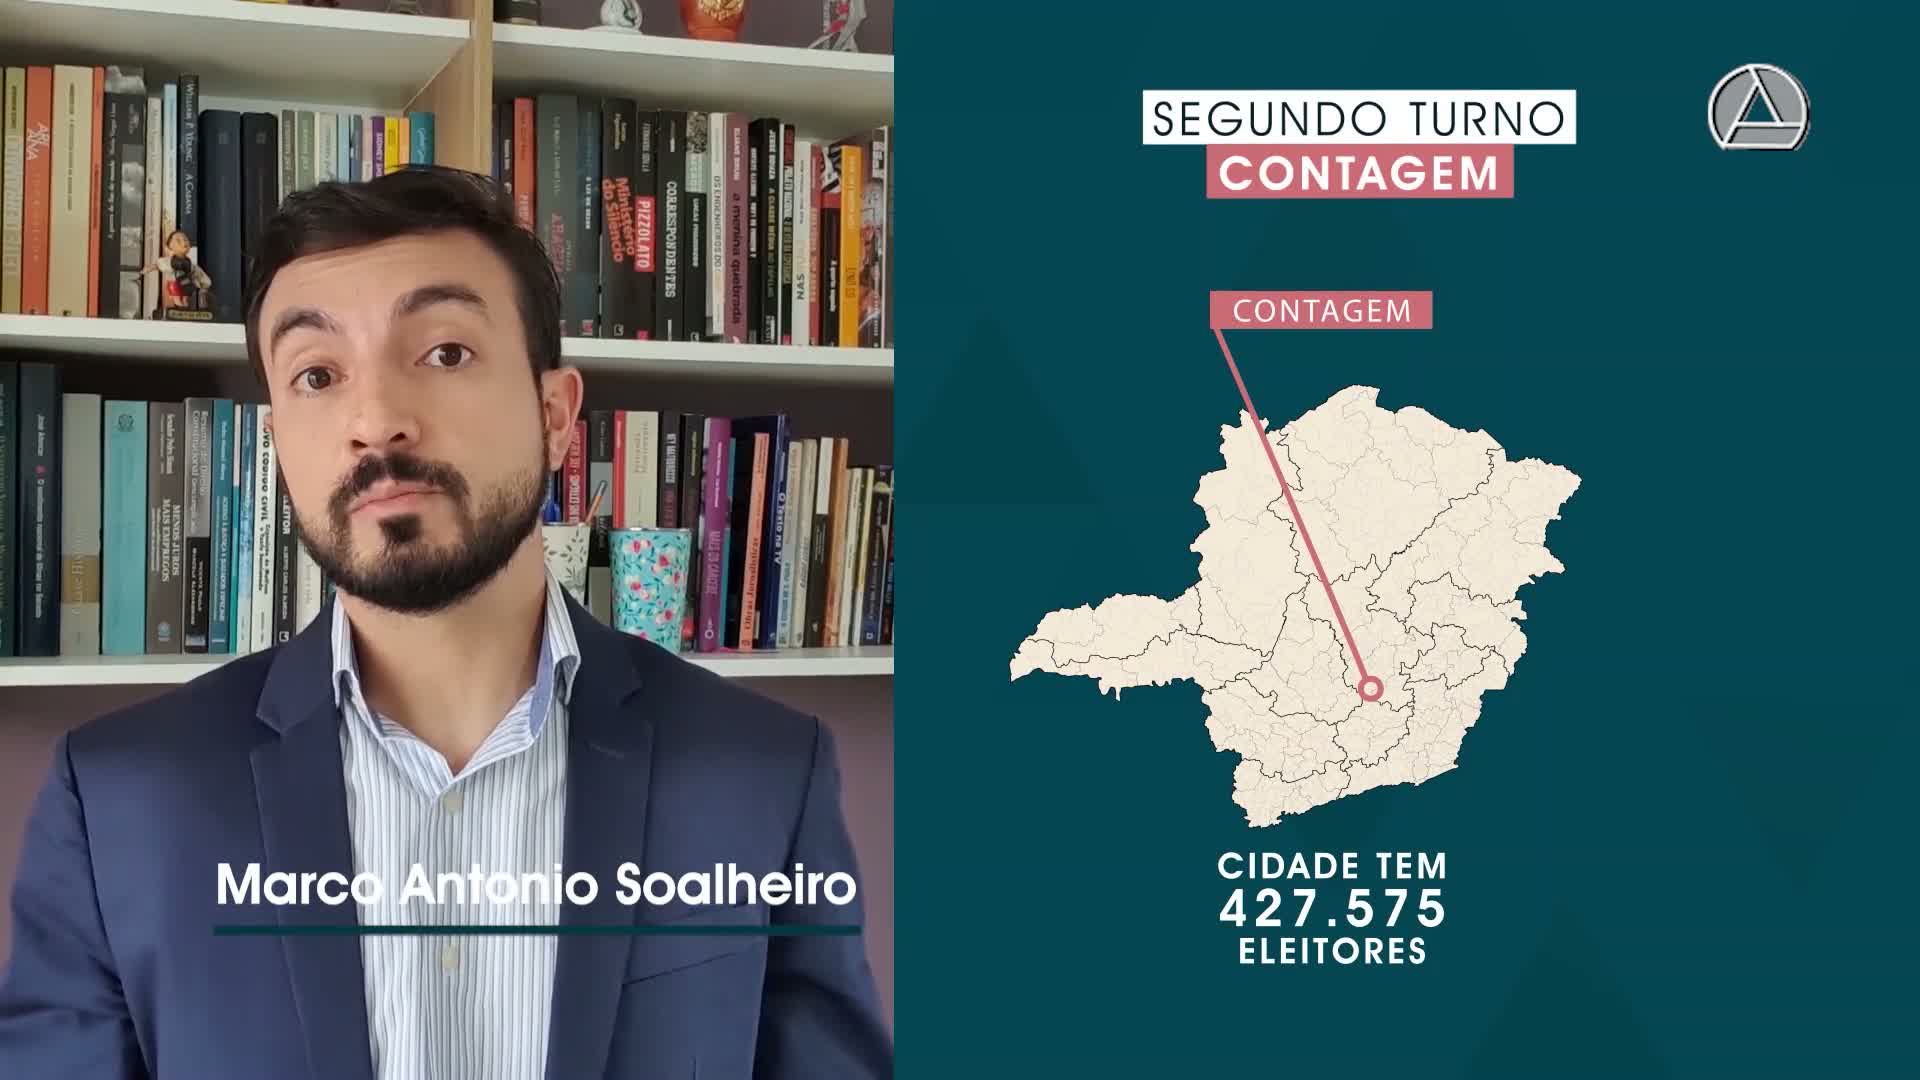 Contagem tem segundo turno após recorde de candidaturas